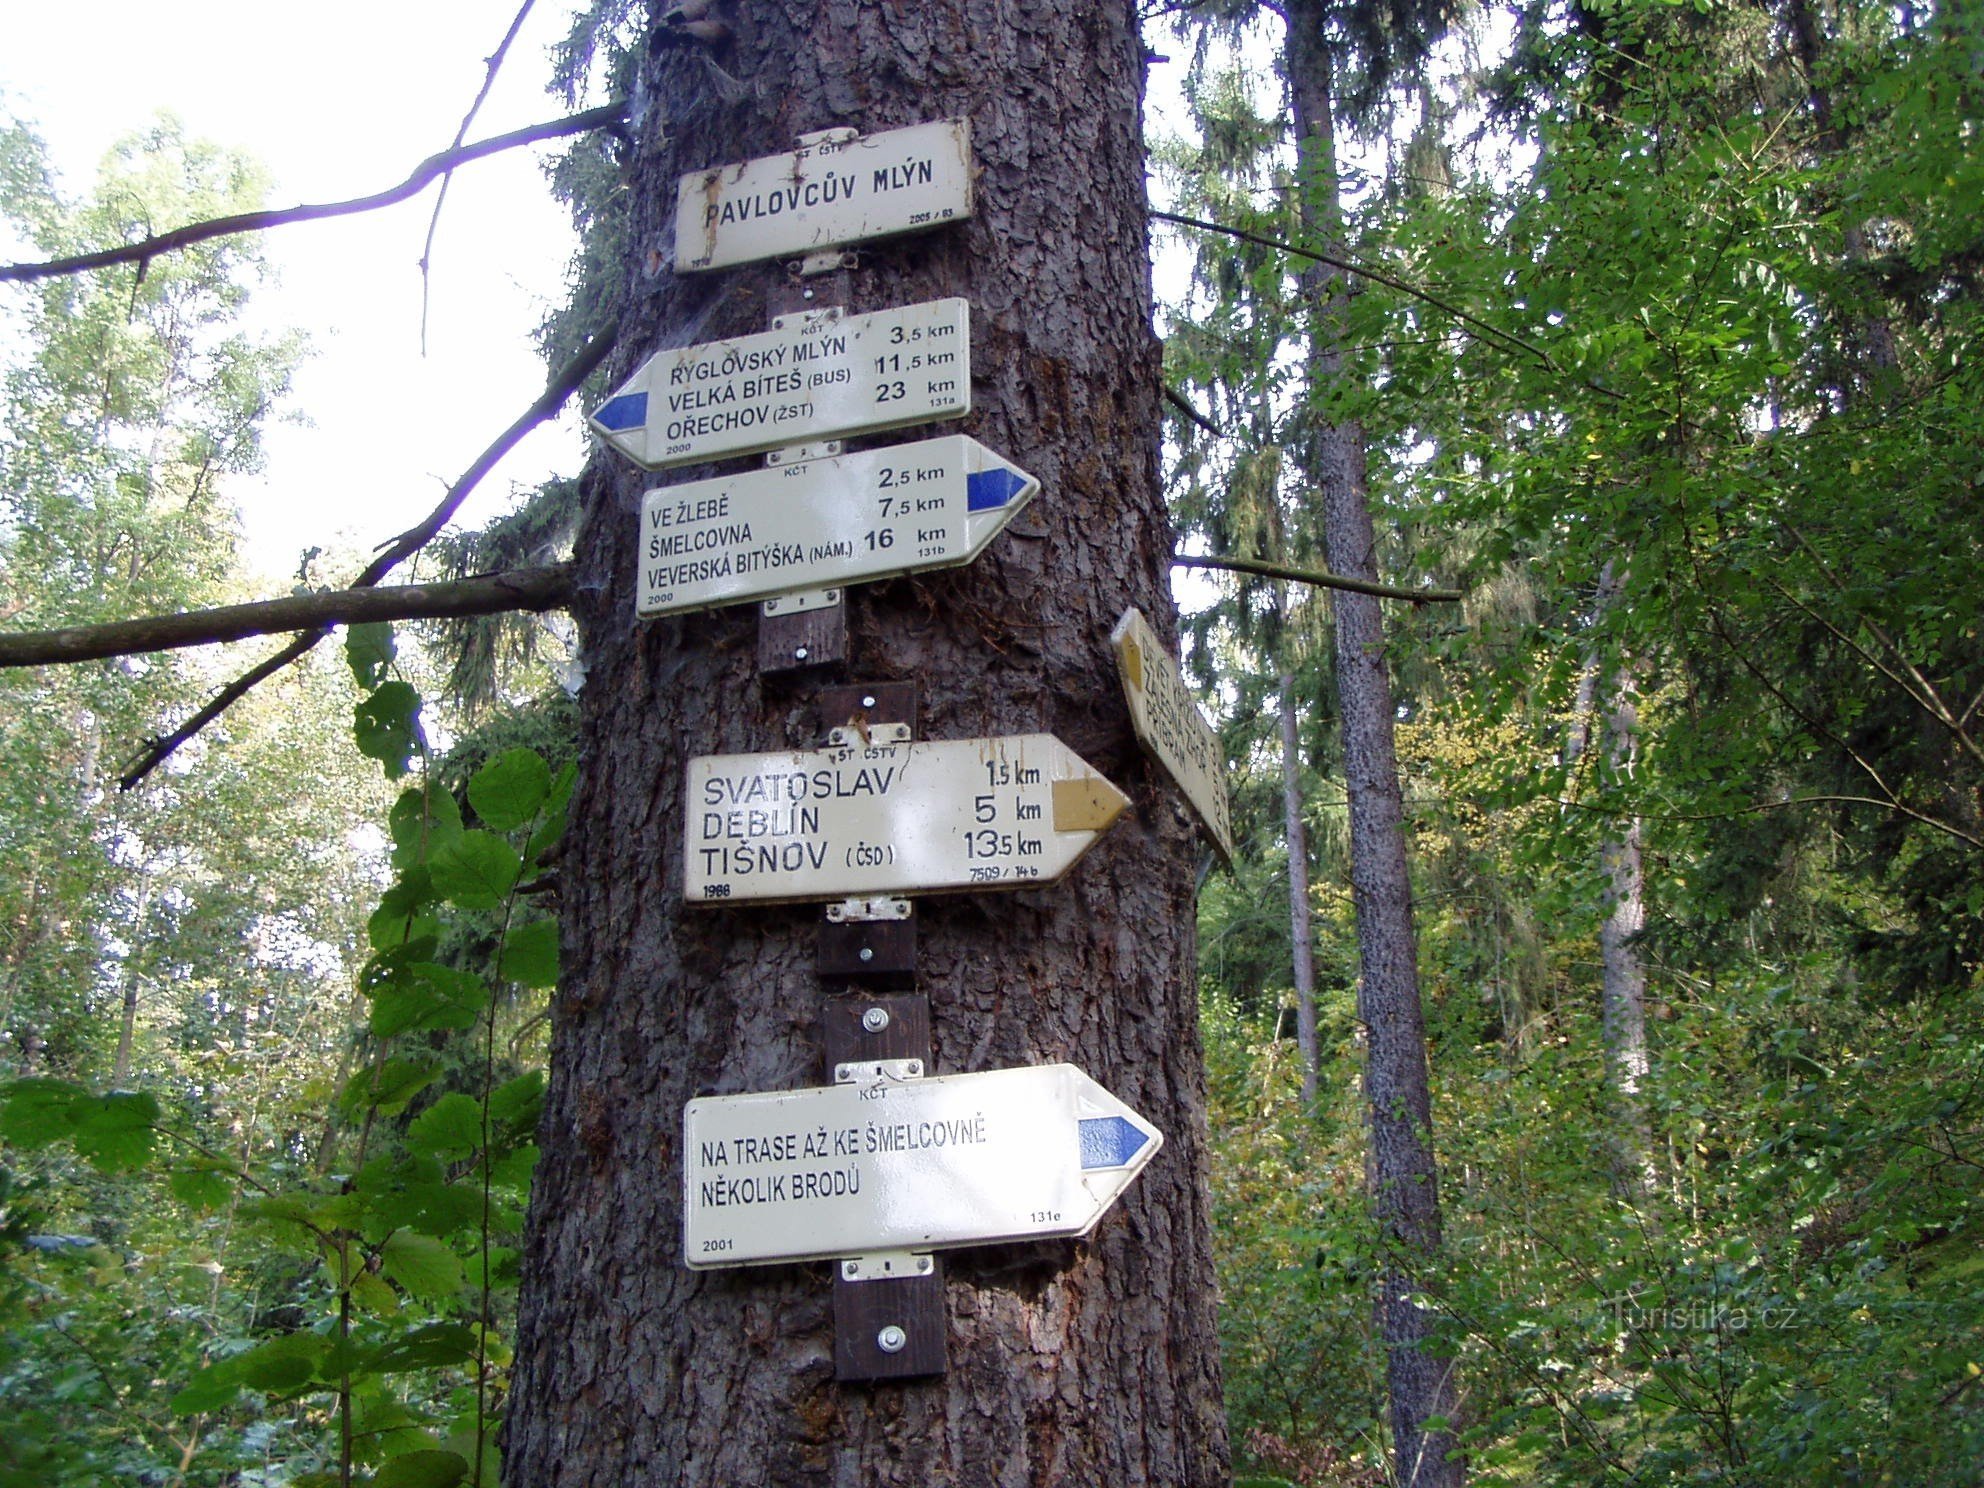 Pavlovcov Mlyn signpost